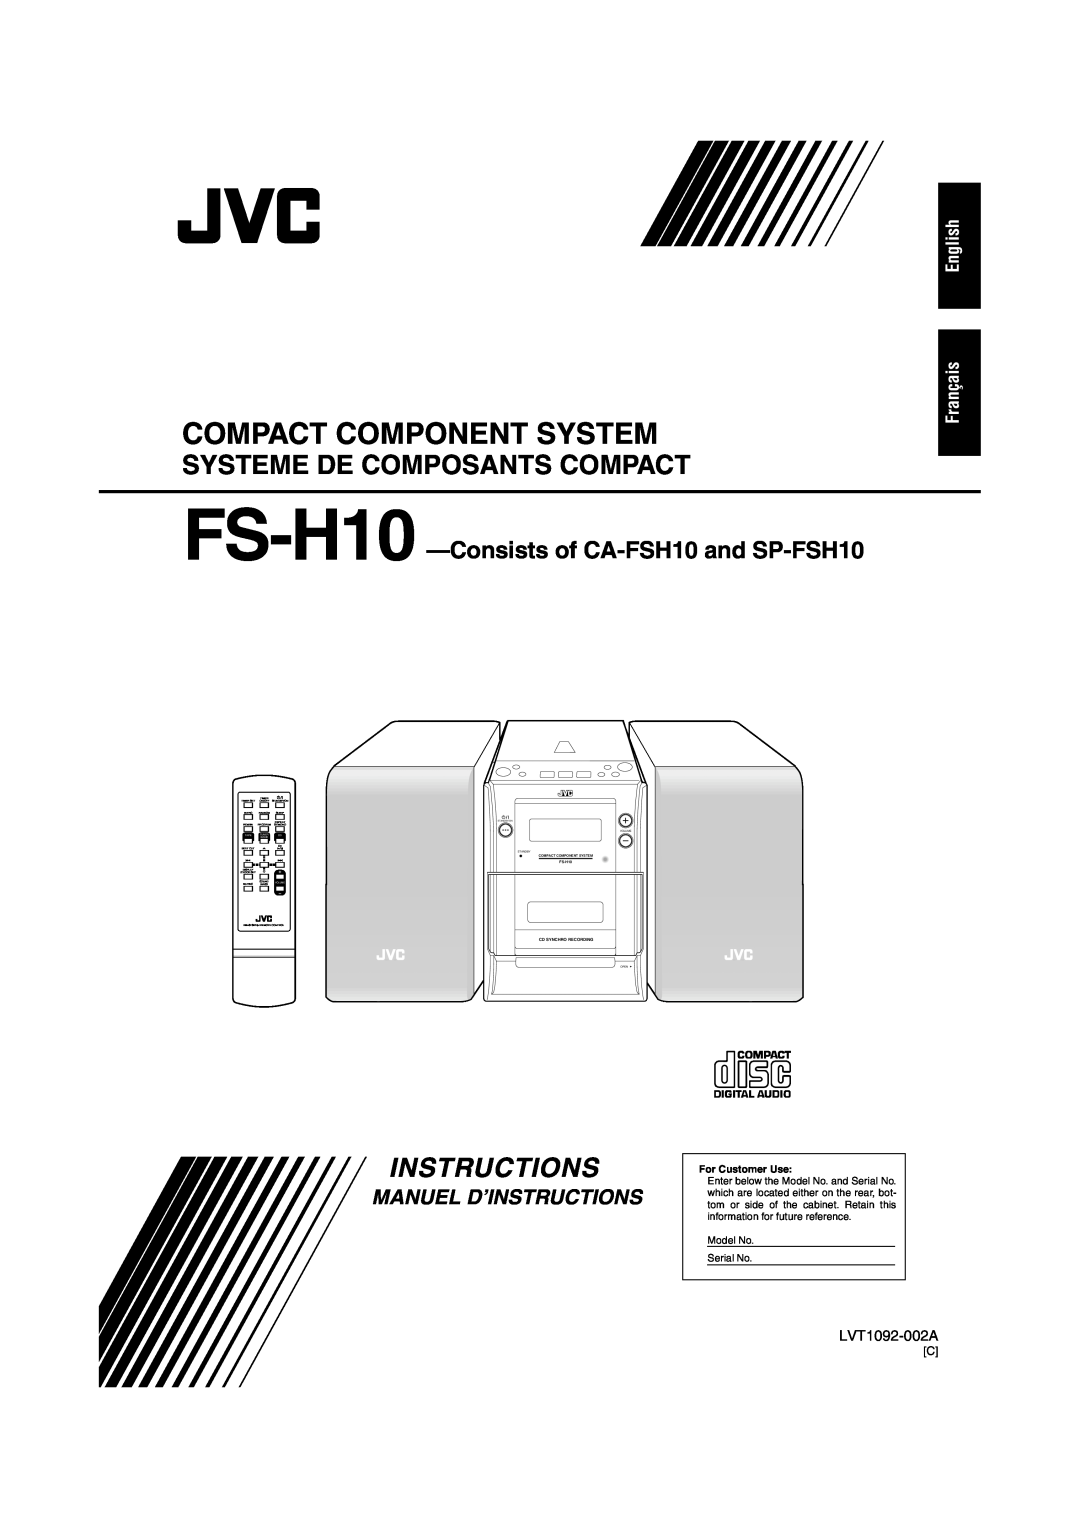 JVC FS-H10 Systeme De Composants Compact, Manuel D’Instructions, English Français, Compact Component System, LVT1092-002A 